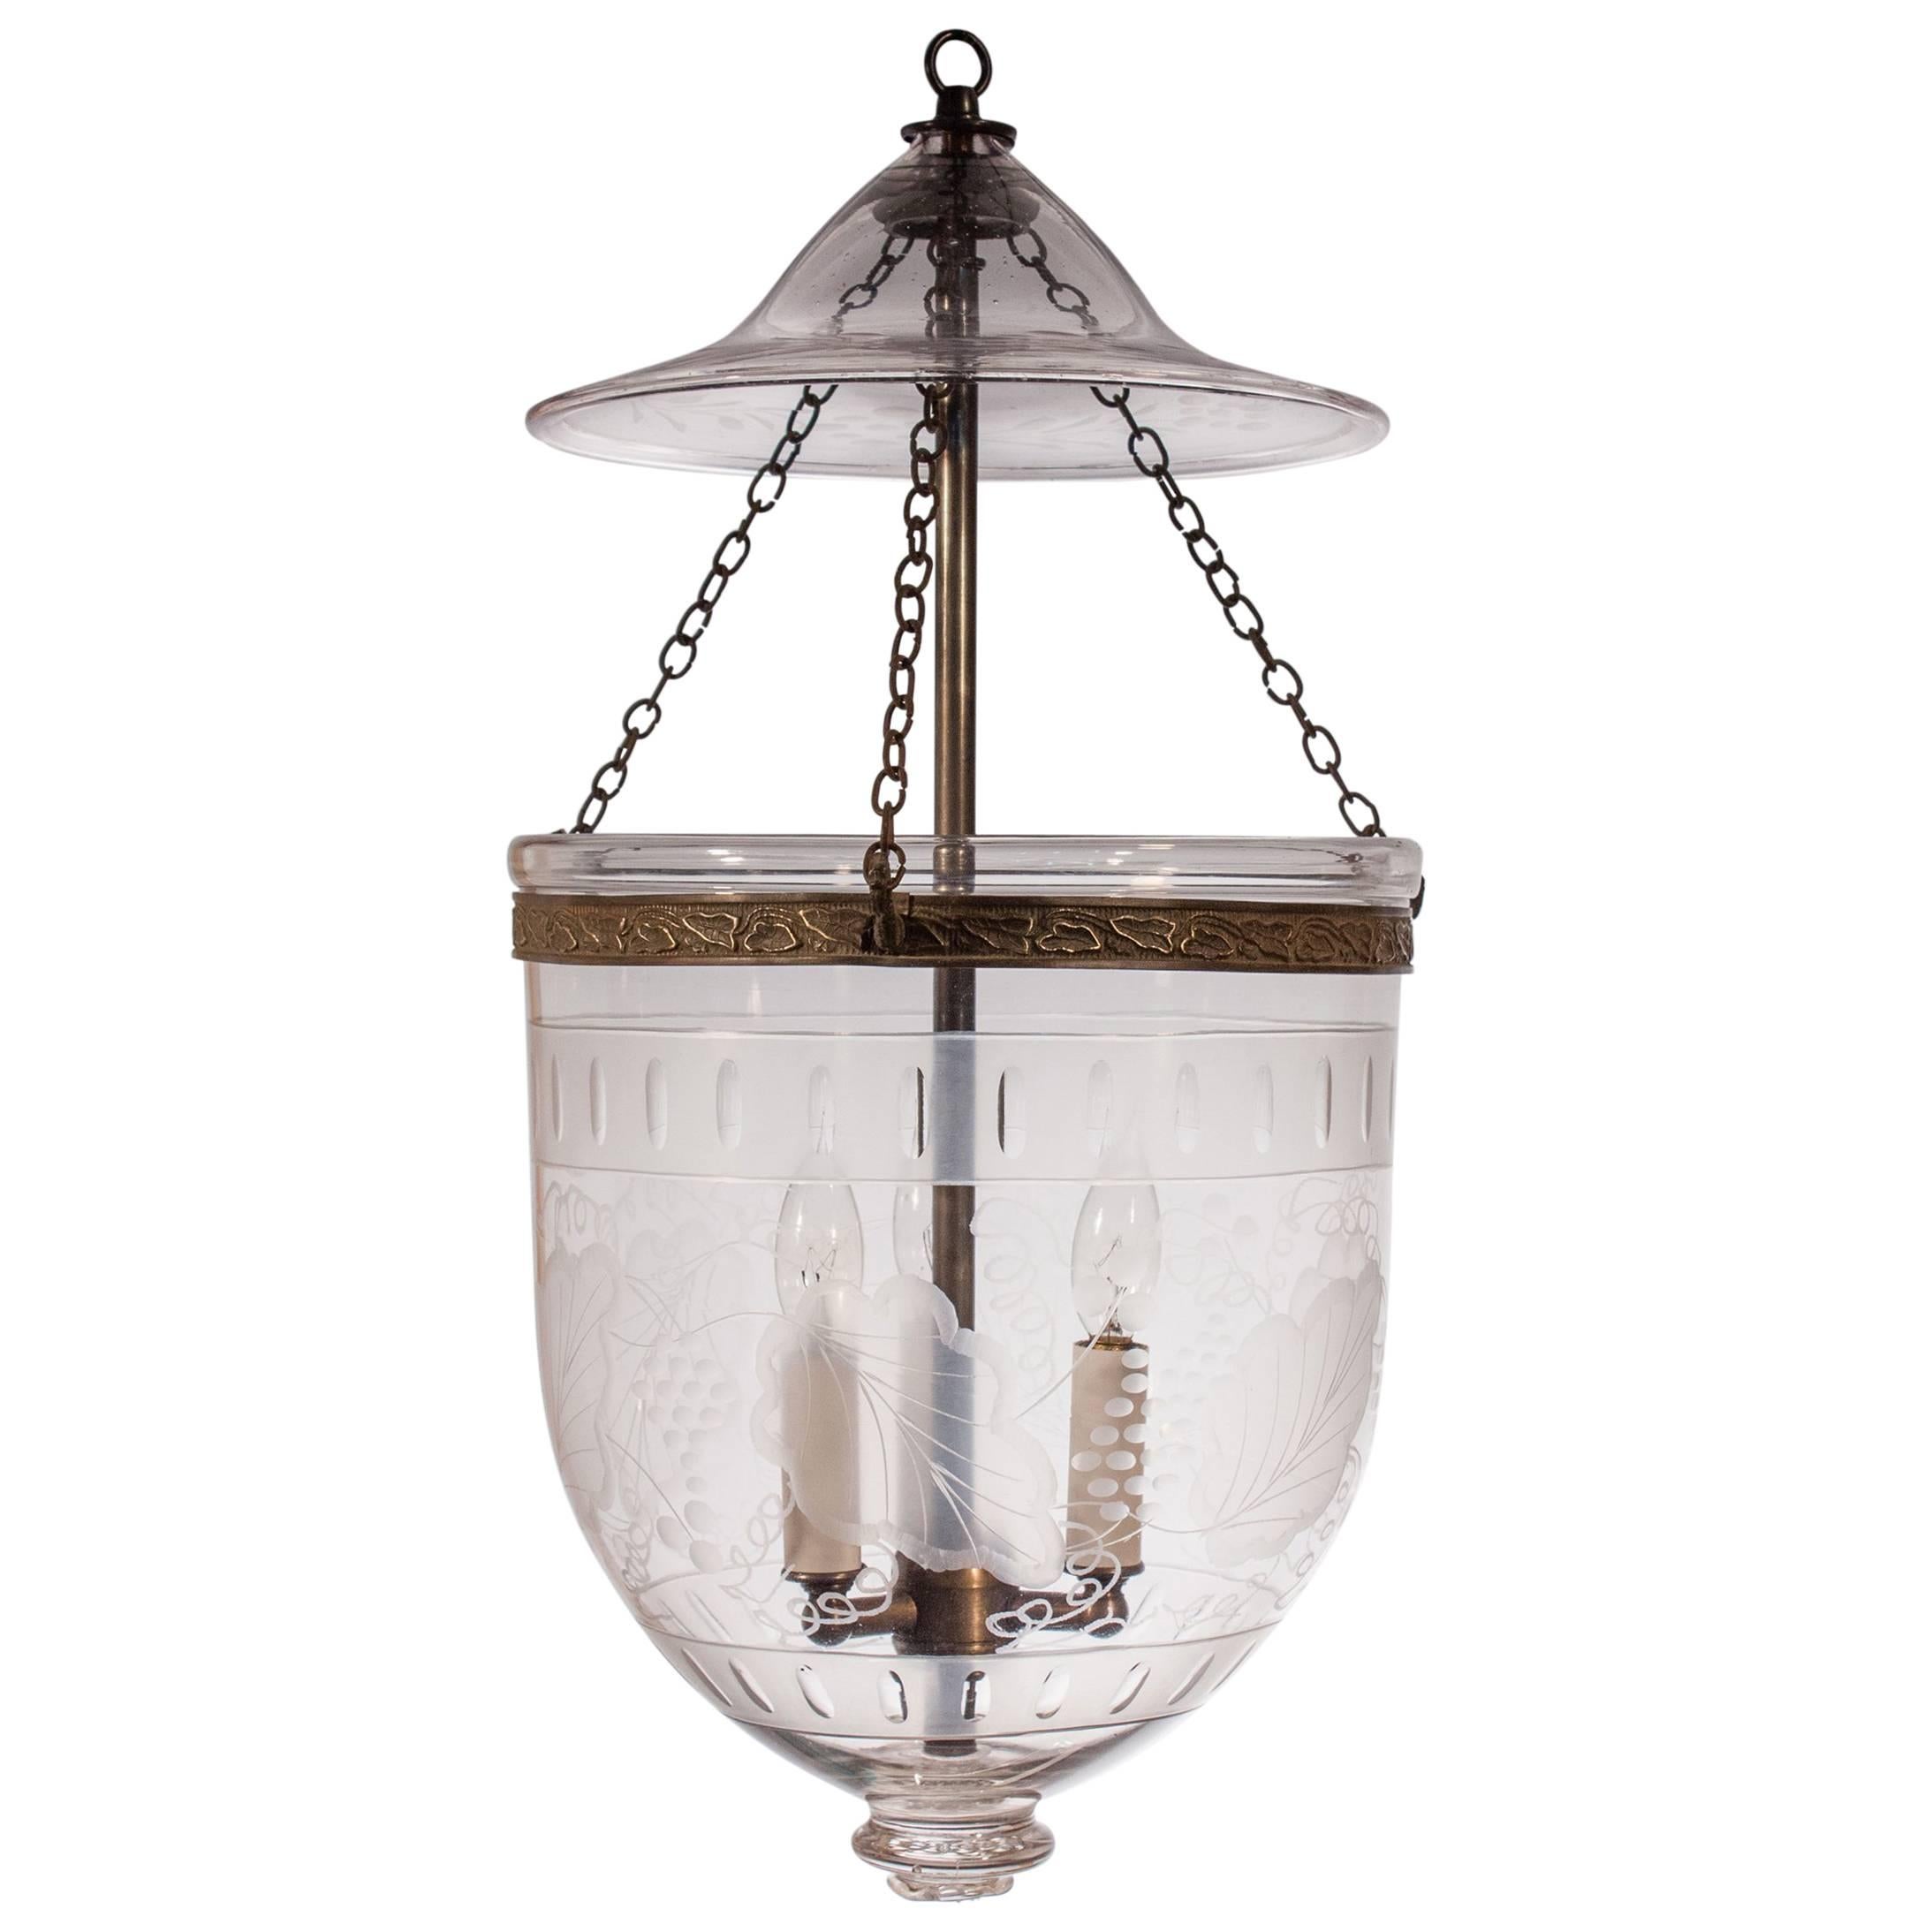 Antique Bell Jar Lantern with Etched Leaf Motif